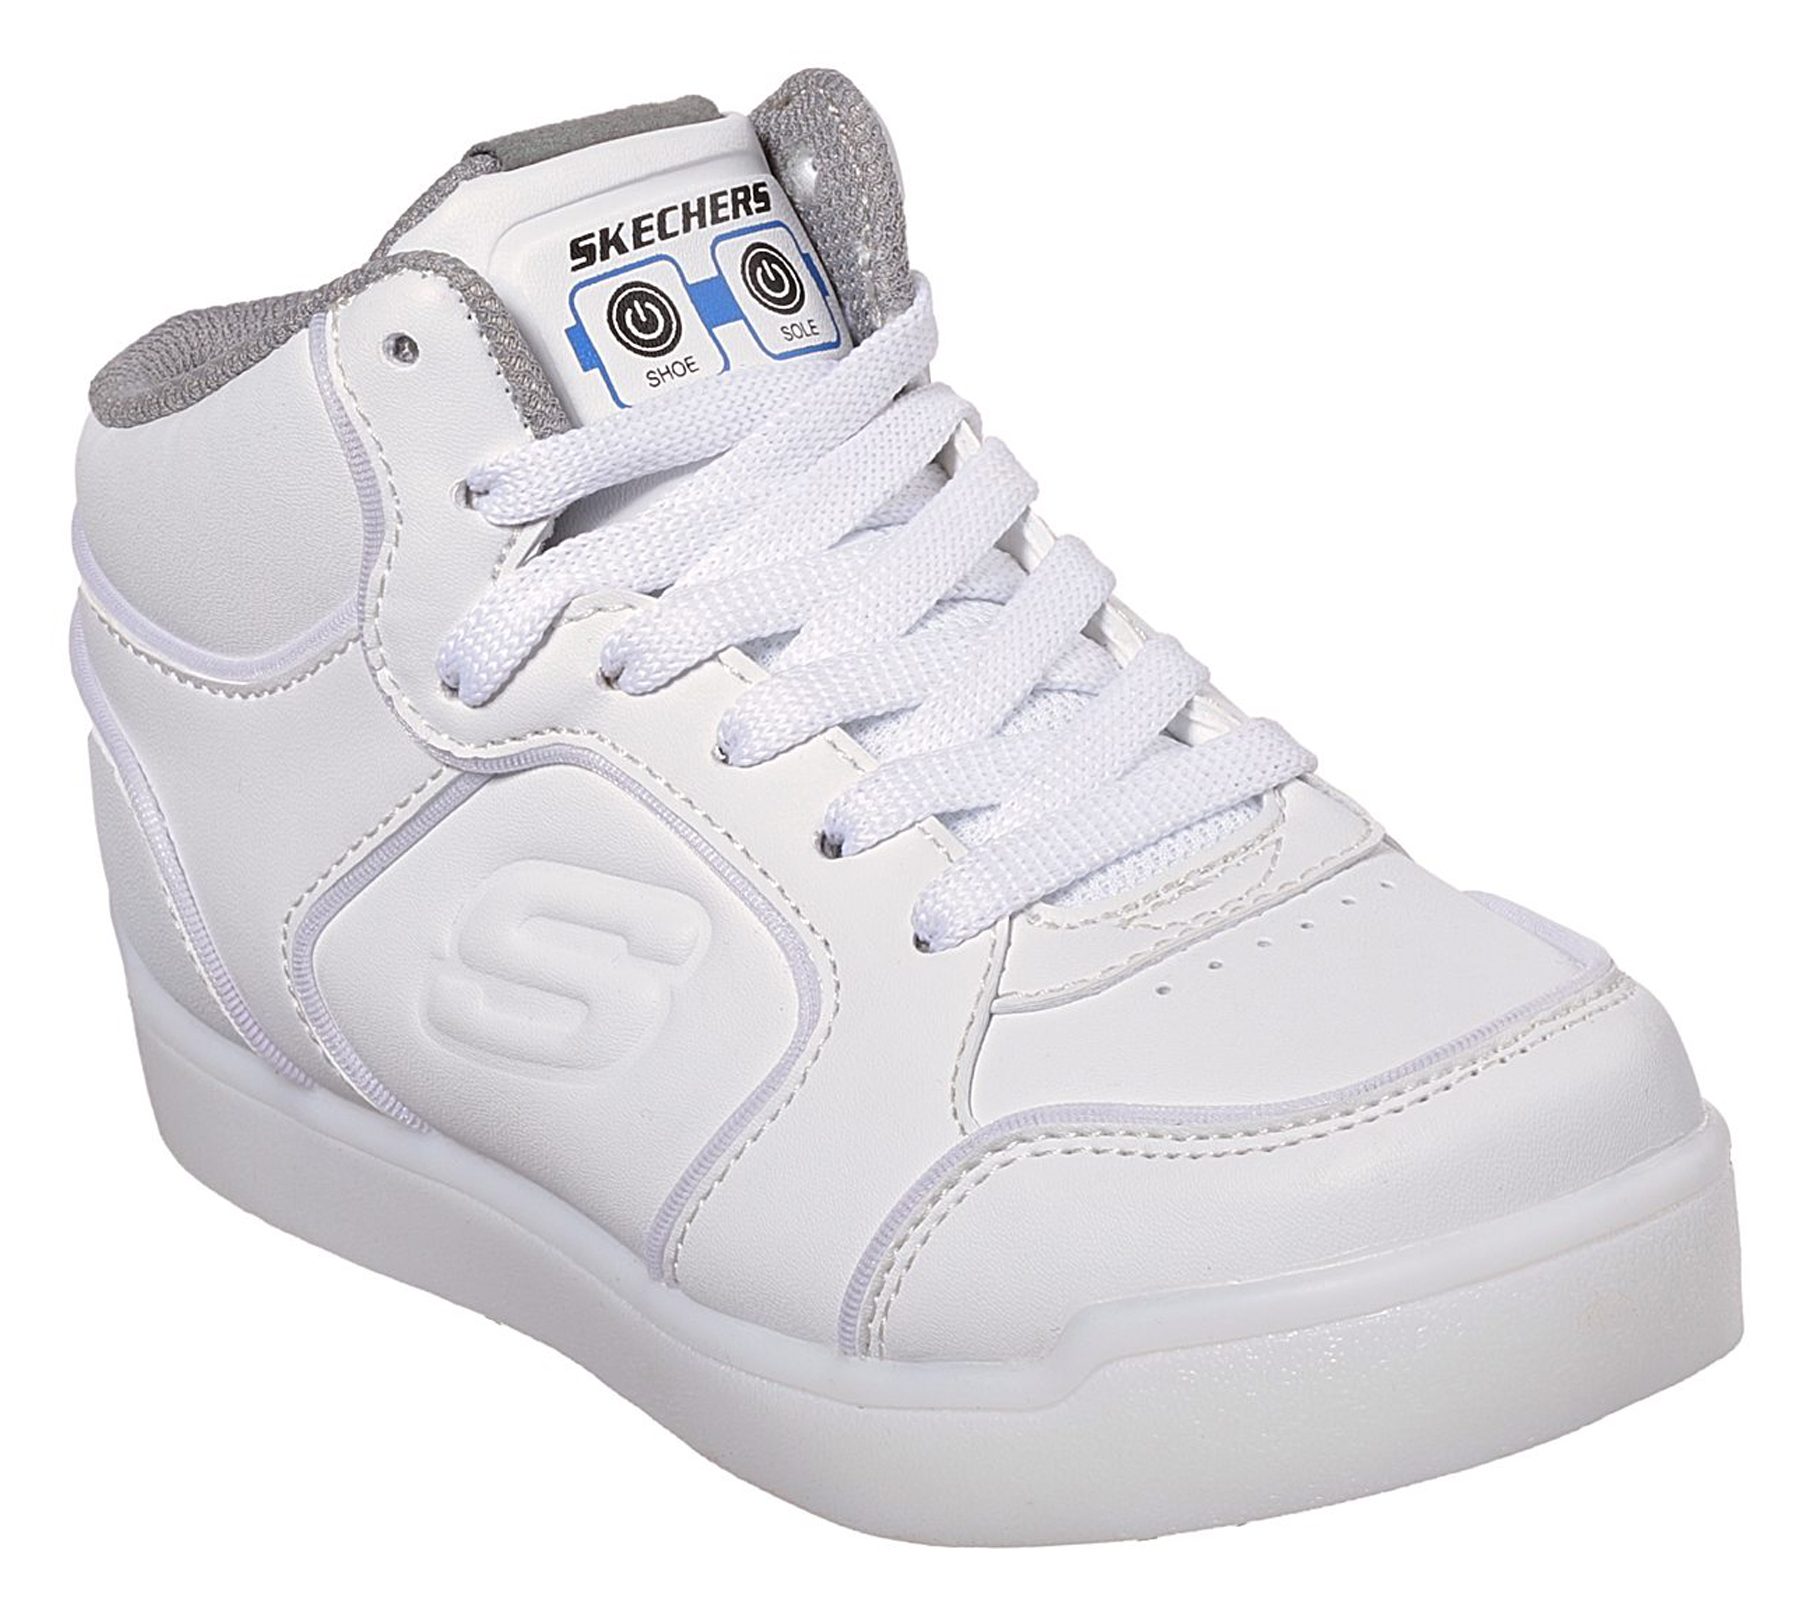 Skechers S Lights: Energy Lights Ultra White 90622L WHT - Boys Boots ...